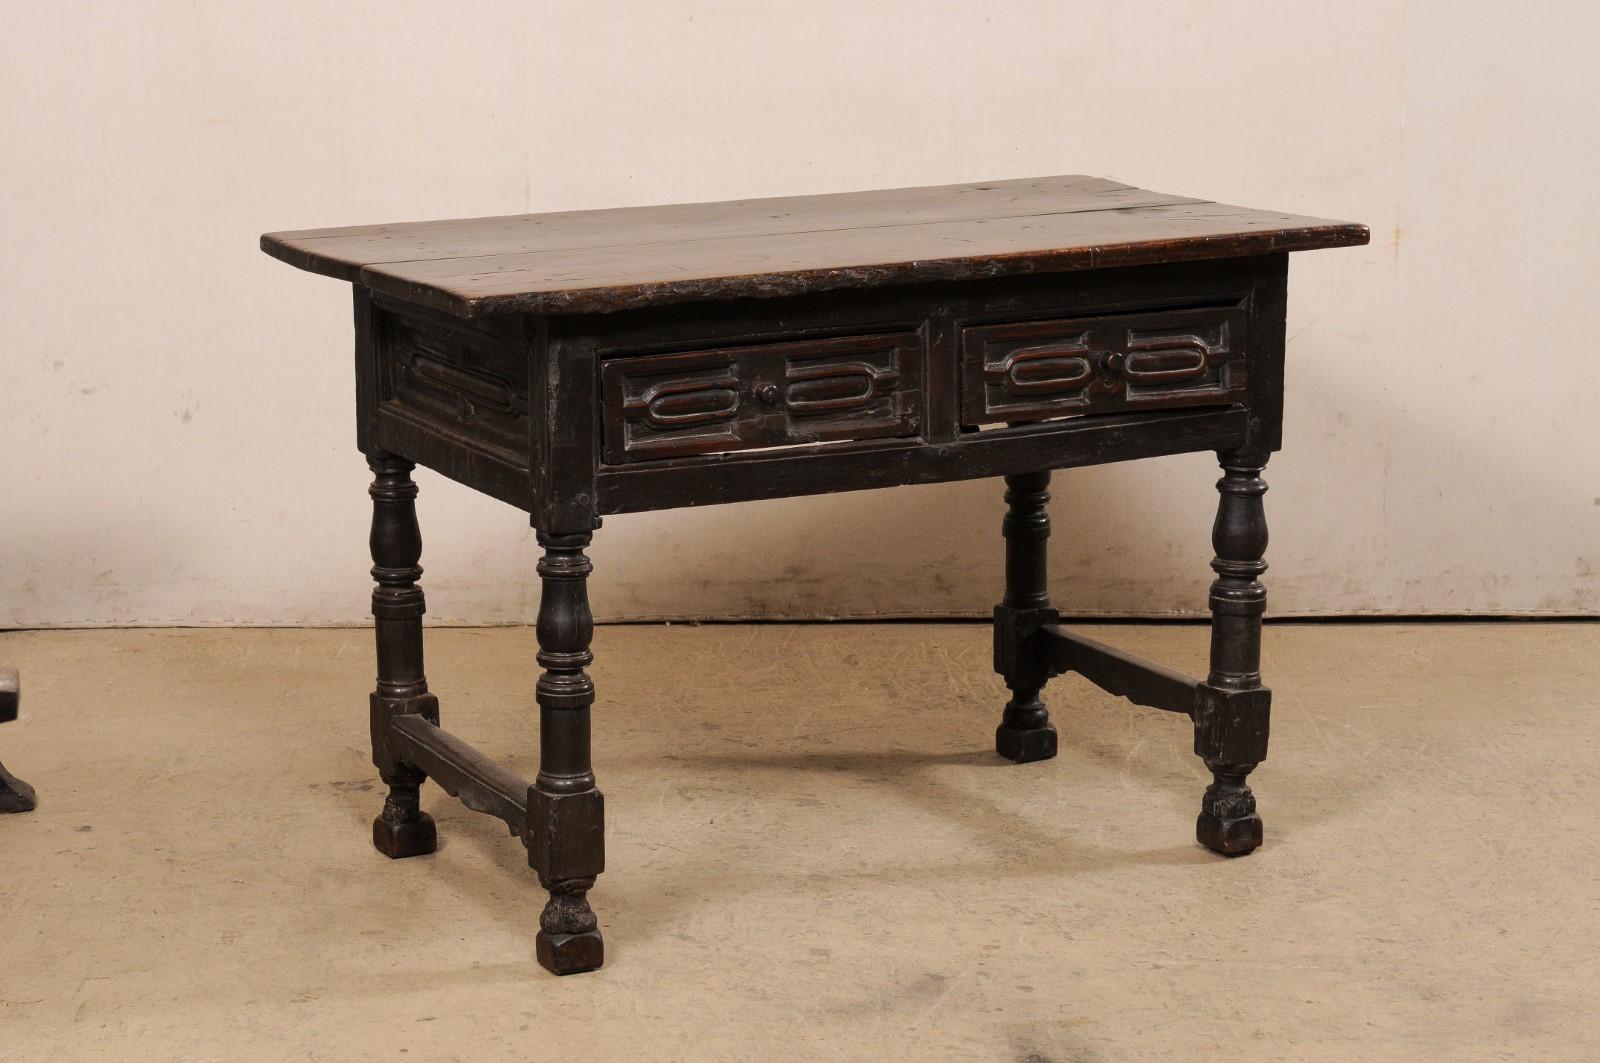 Table d'appoint italienne en bois de noyer sculpté avec tiroirs, du début du 18e siècle (peut-être du 17e siècle). Cette table ancienne d'Italie, créée en riche bois de noyer, possède un plateau de forme rectangulaire, qui surplombe le tablier